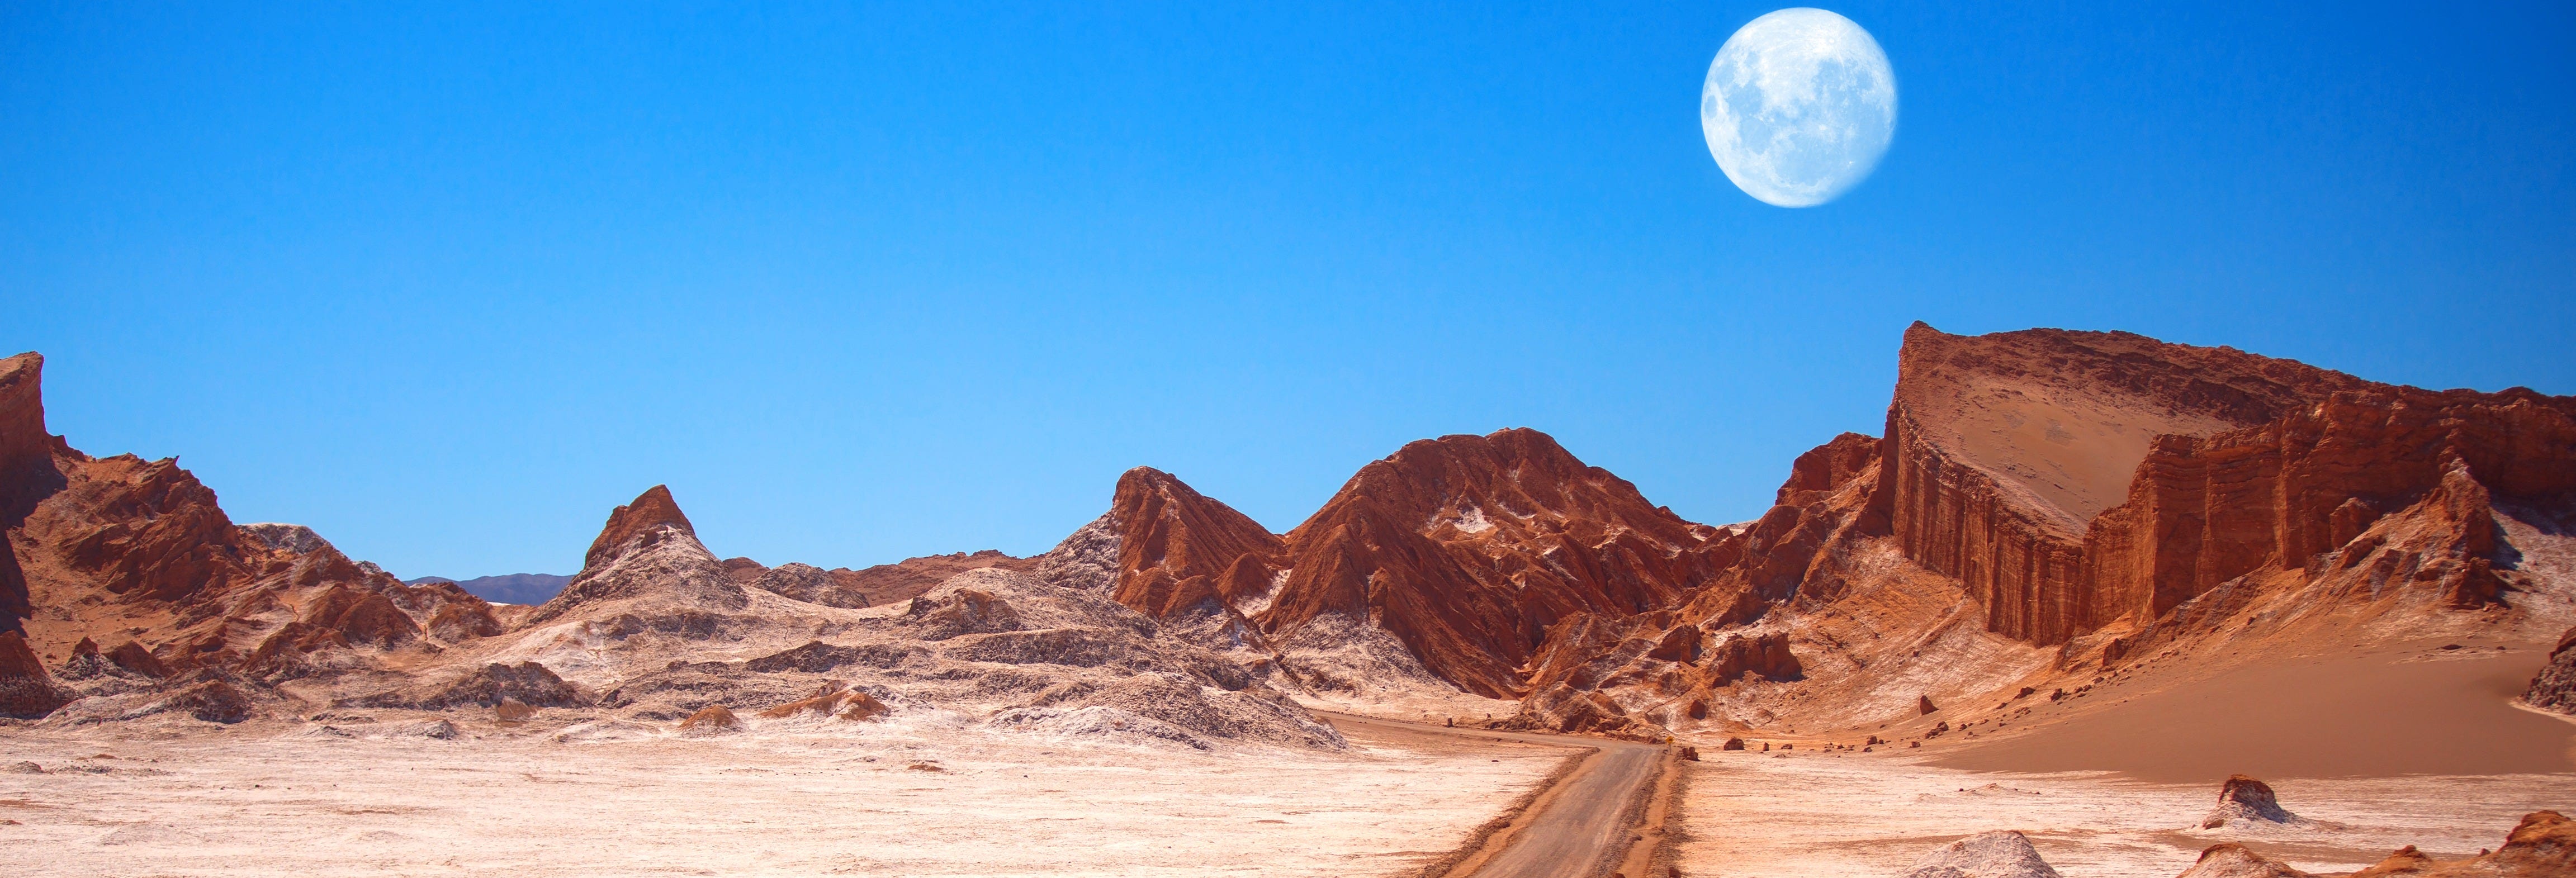 Atacama Desert: Day Trip to Moon Valley